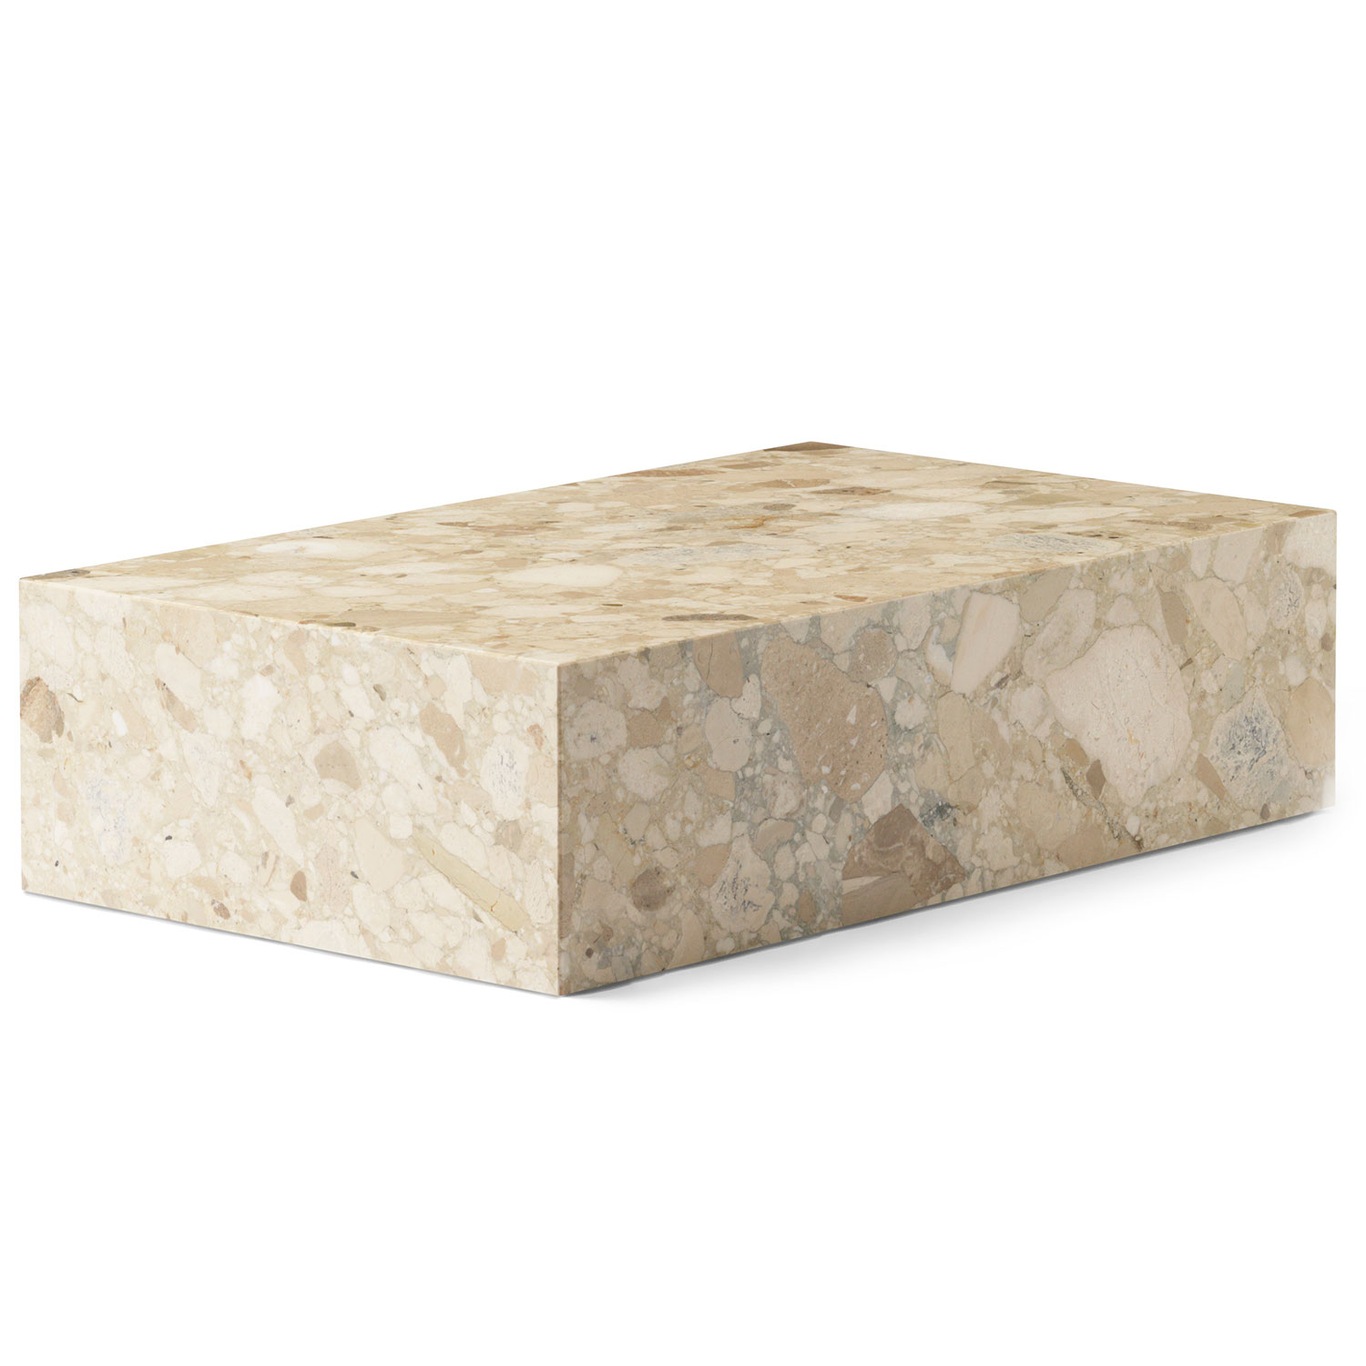 Plinth Low Sofabord 100x60 cm, Kunis Breccia Marmor